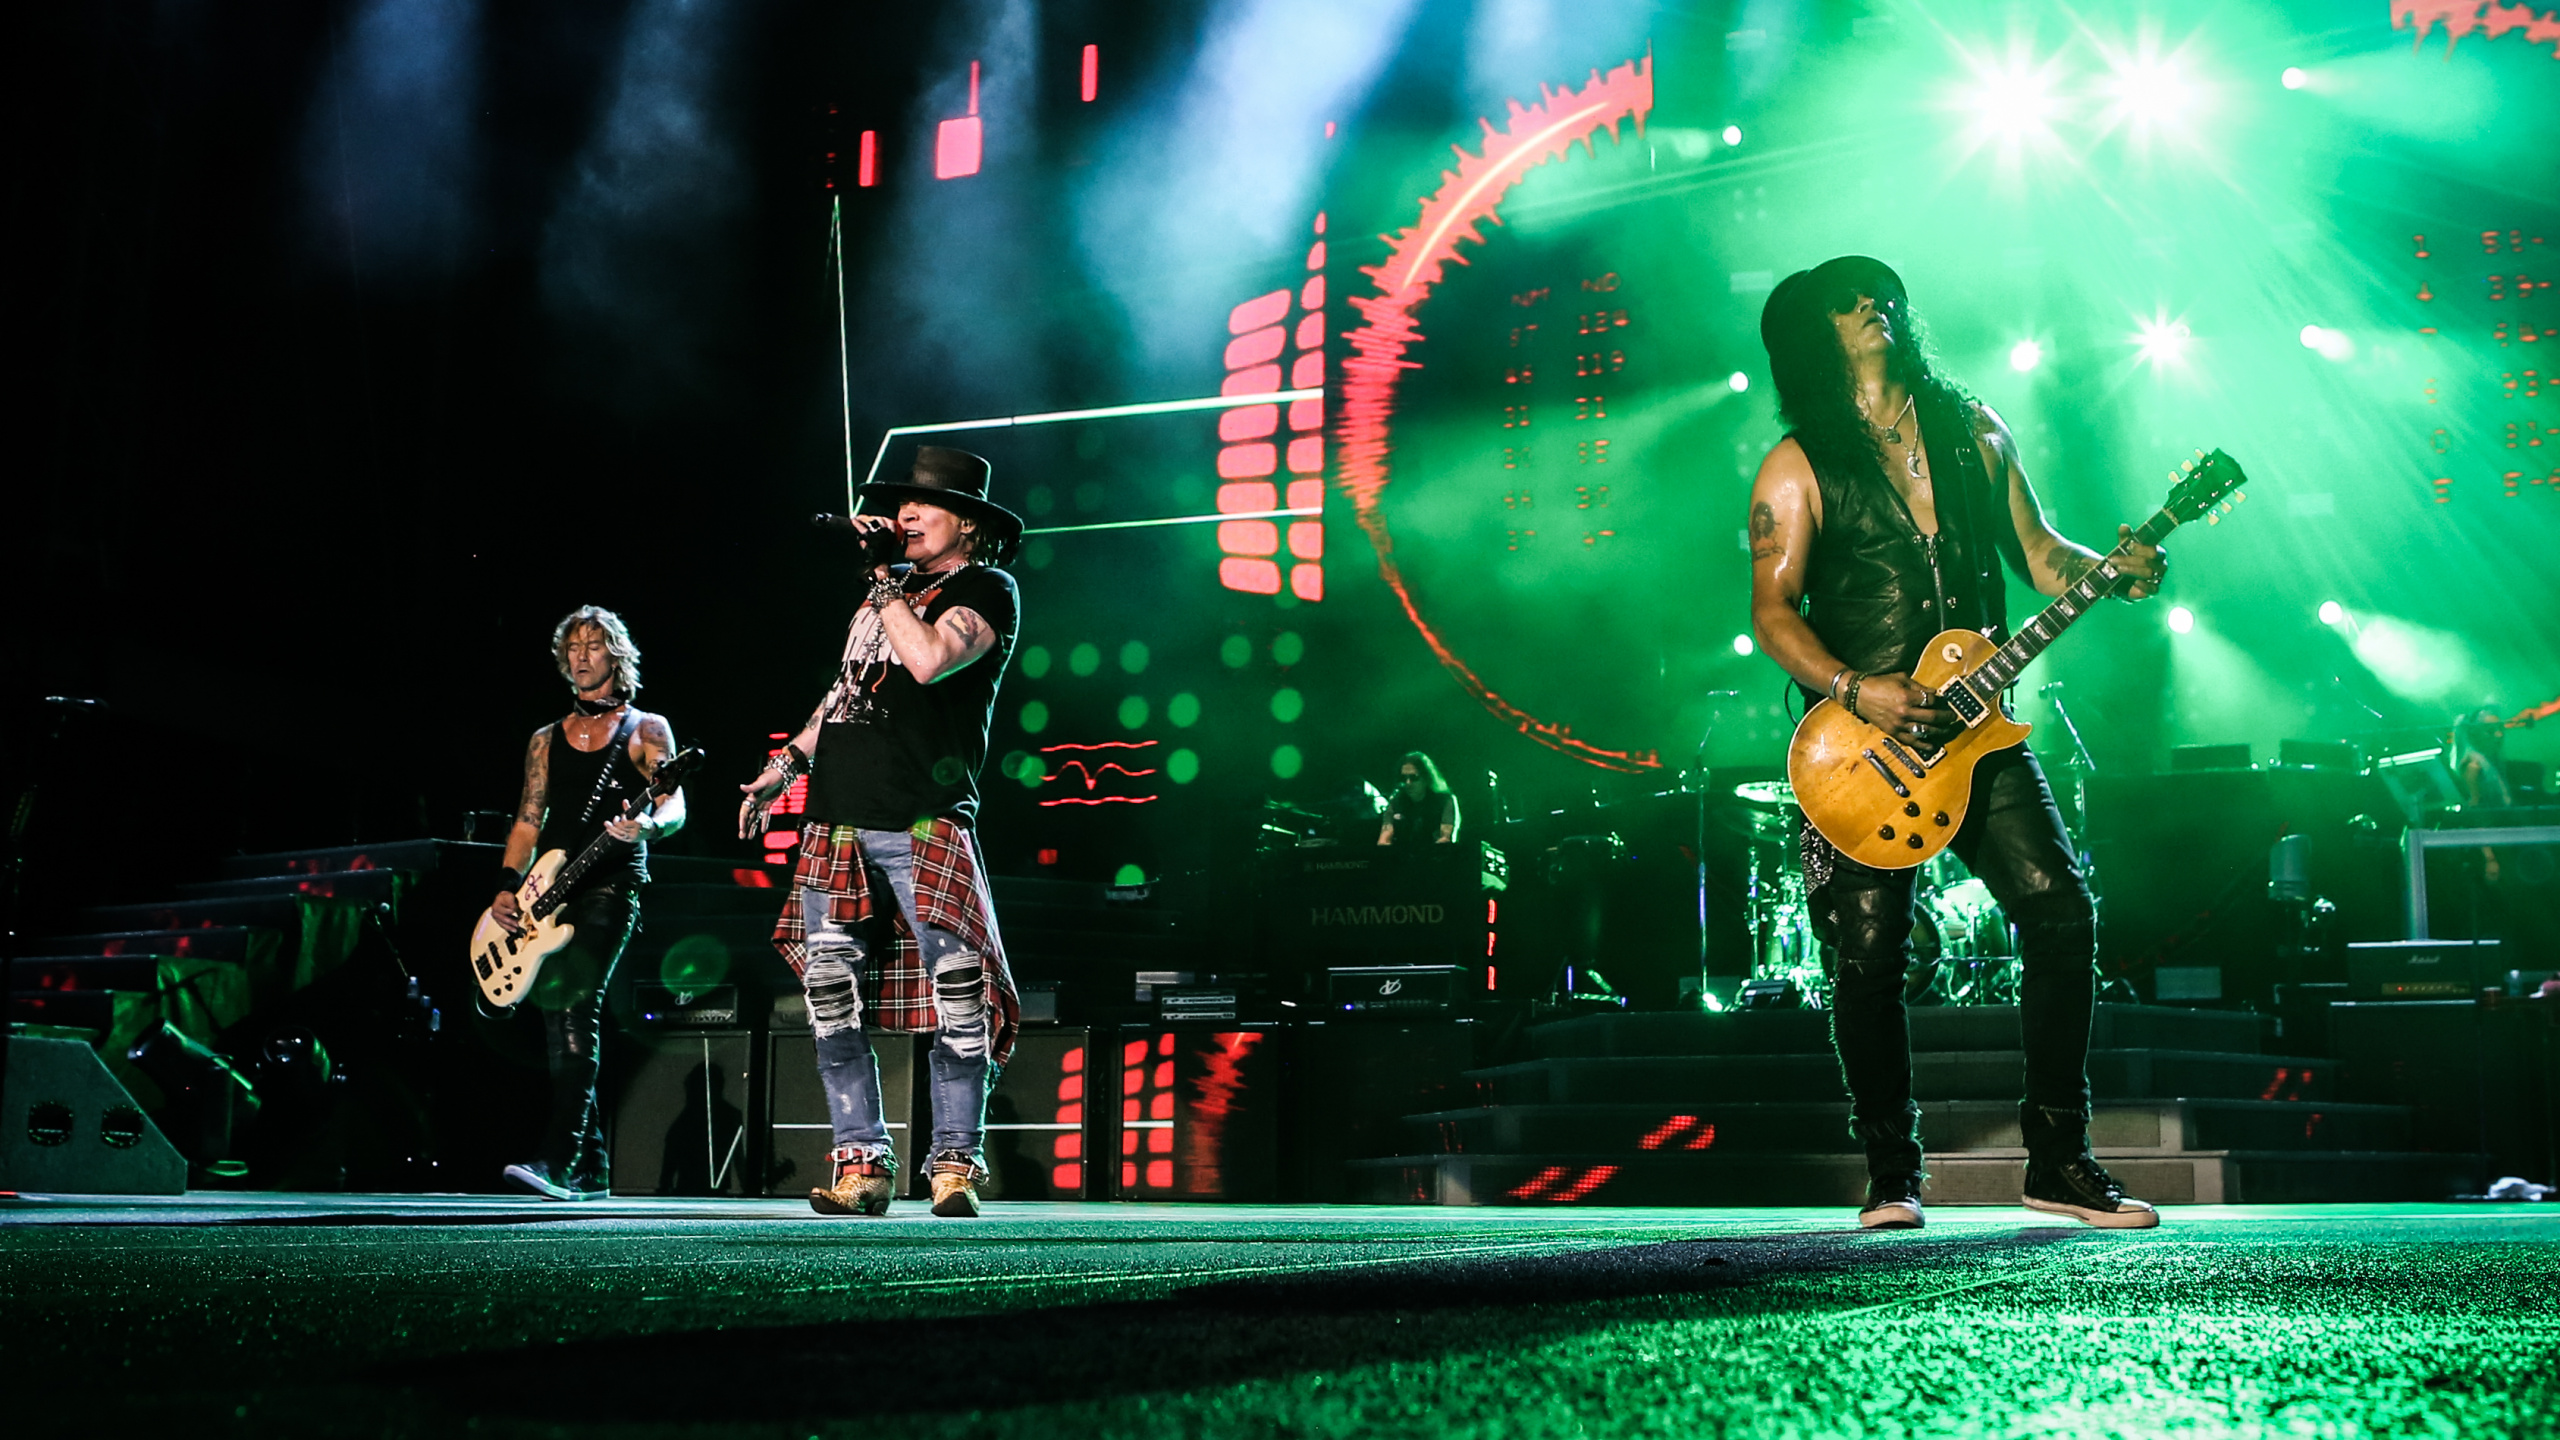 Nicht in Diesem Leben-Tour, Guns N Roses, Rockkonzert, Leistung, Unterhaltung. Wallpaper in 2560x1440 Resolution